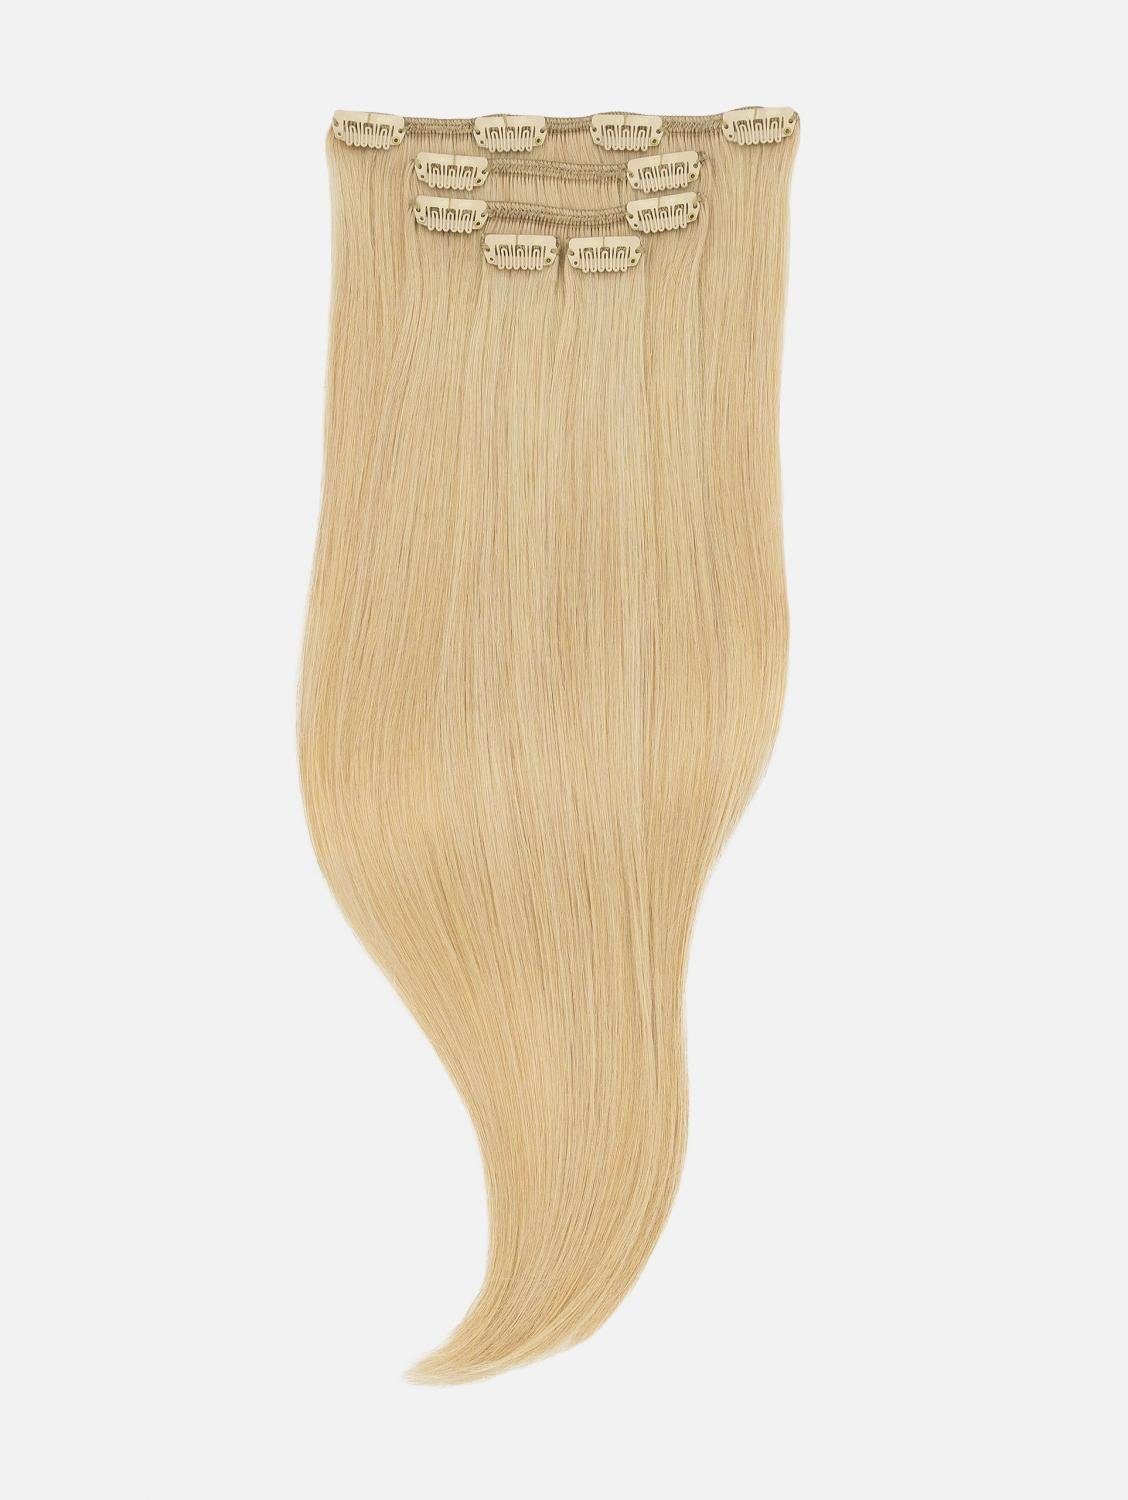 EH - Haarverlängerung Echthaar-Extension Clip-In Extensions NATURAL Seidenglatt Echthaar - 5-teilig 40cm, 50cm, Echthaar #24 (Pin Up Blonde)